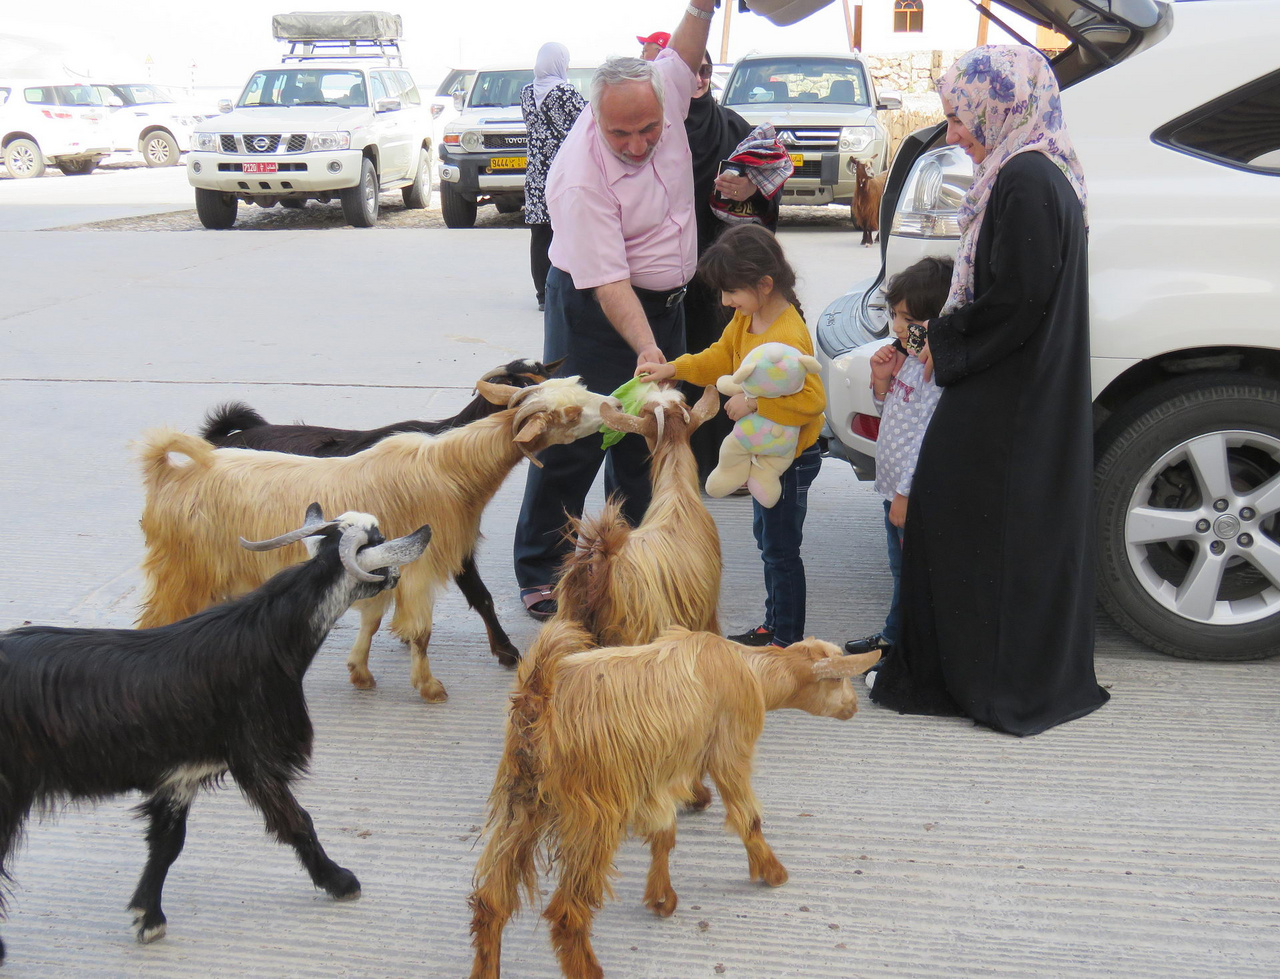 Kéregető kecskék a Wadi Shab tengerparti parkolójában. A család szemlátomást számított rájuk, hiszen hoztak nekik friss salátaleveleket. 